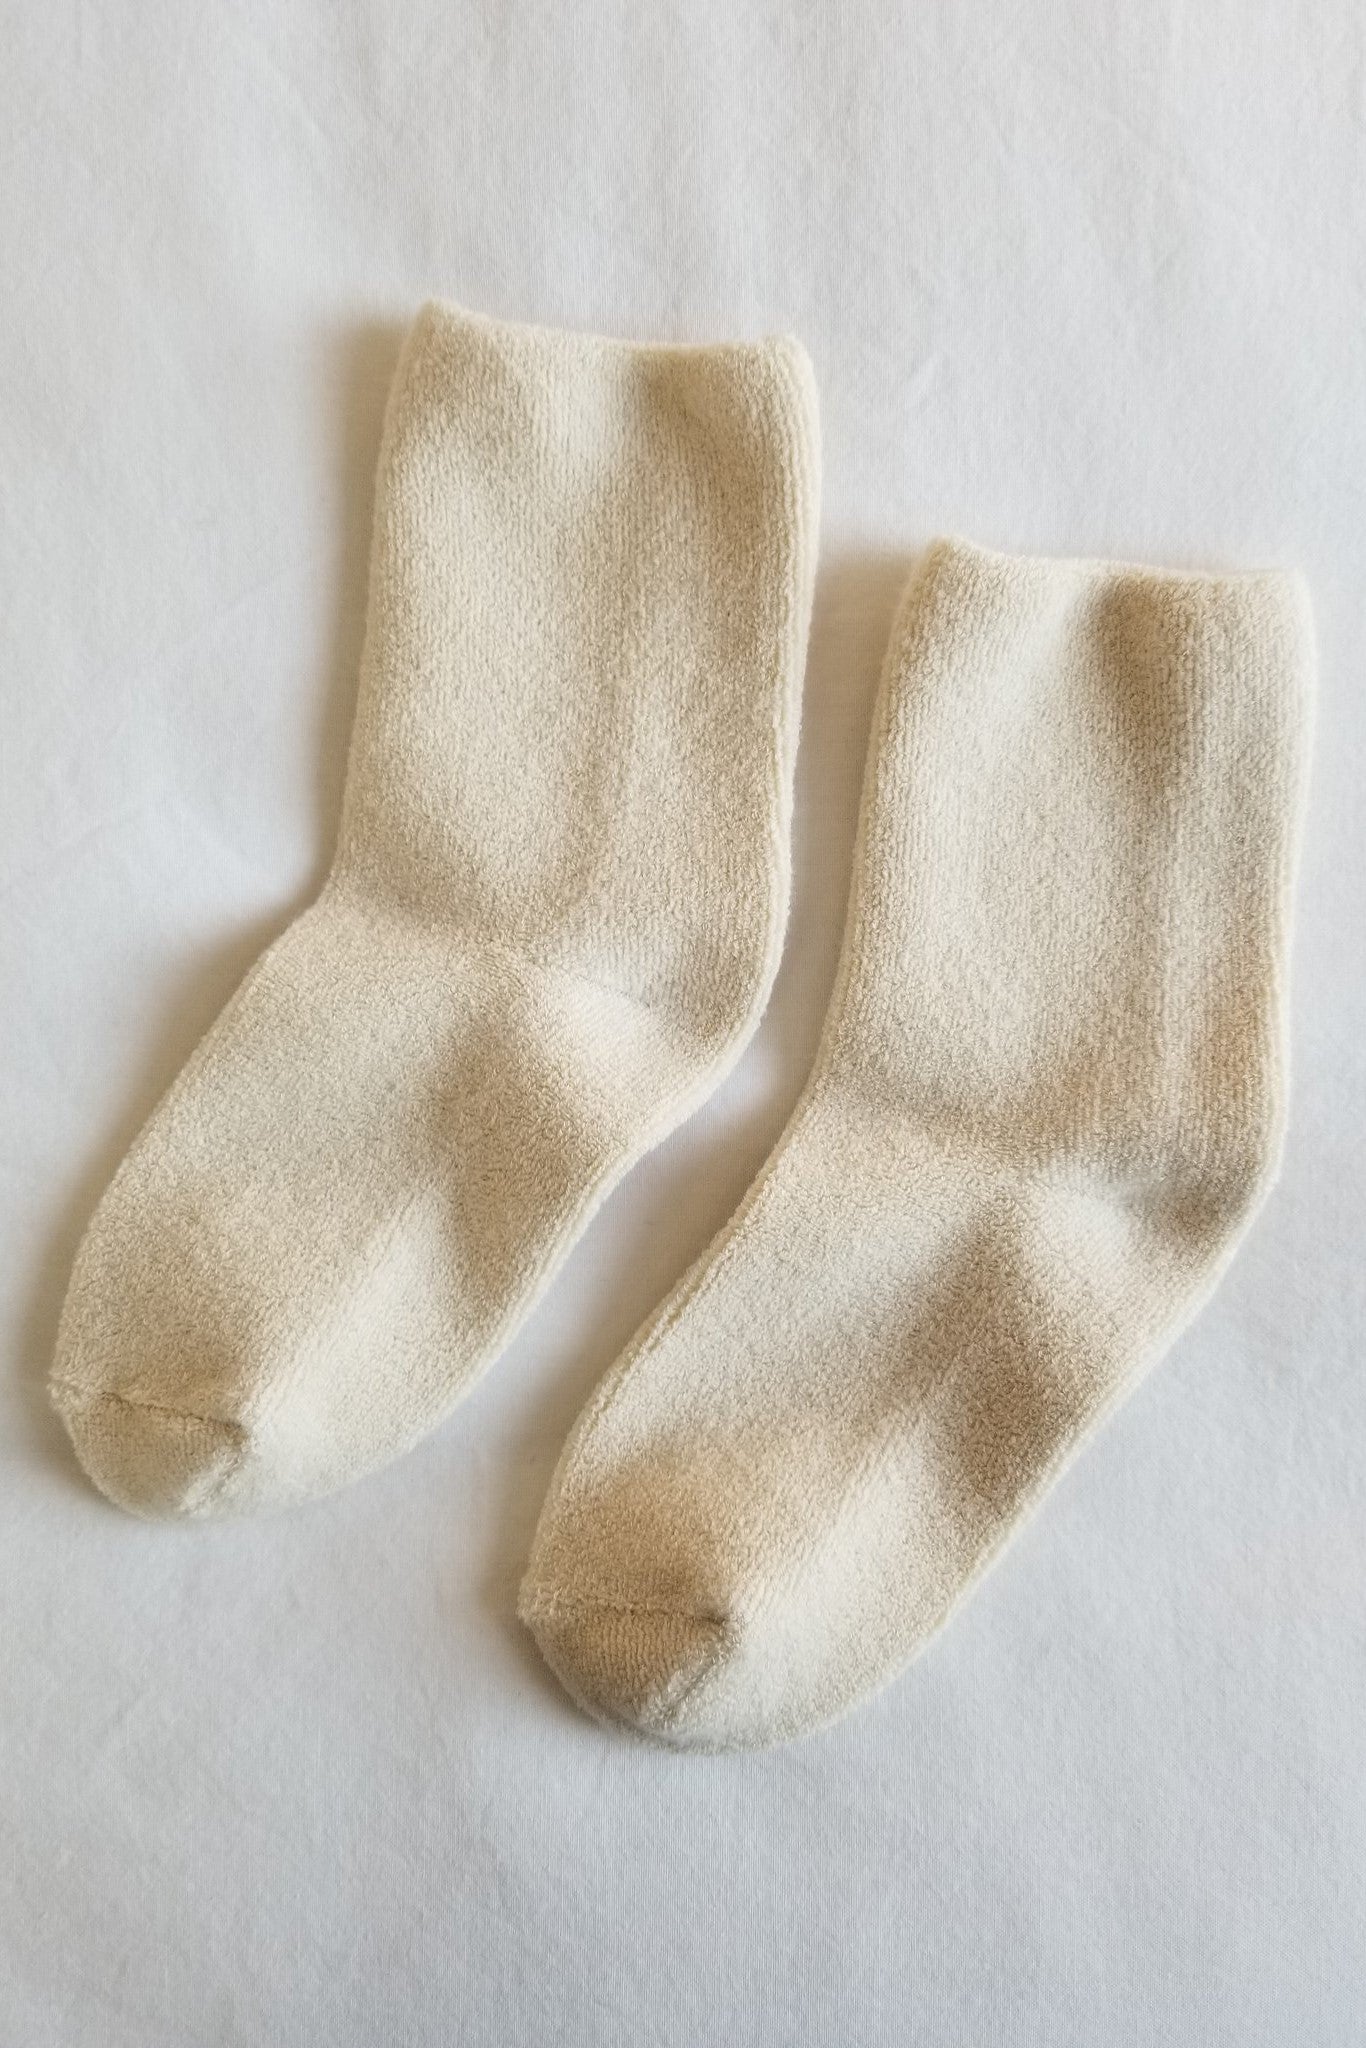 Le Bon - Cloud Socks